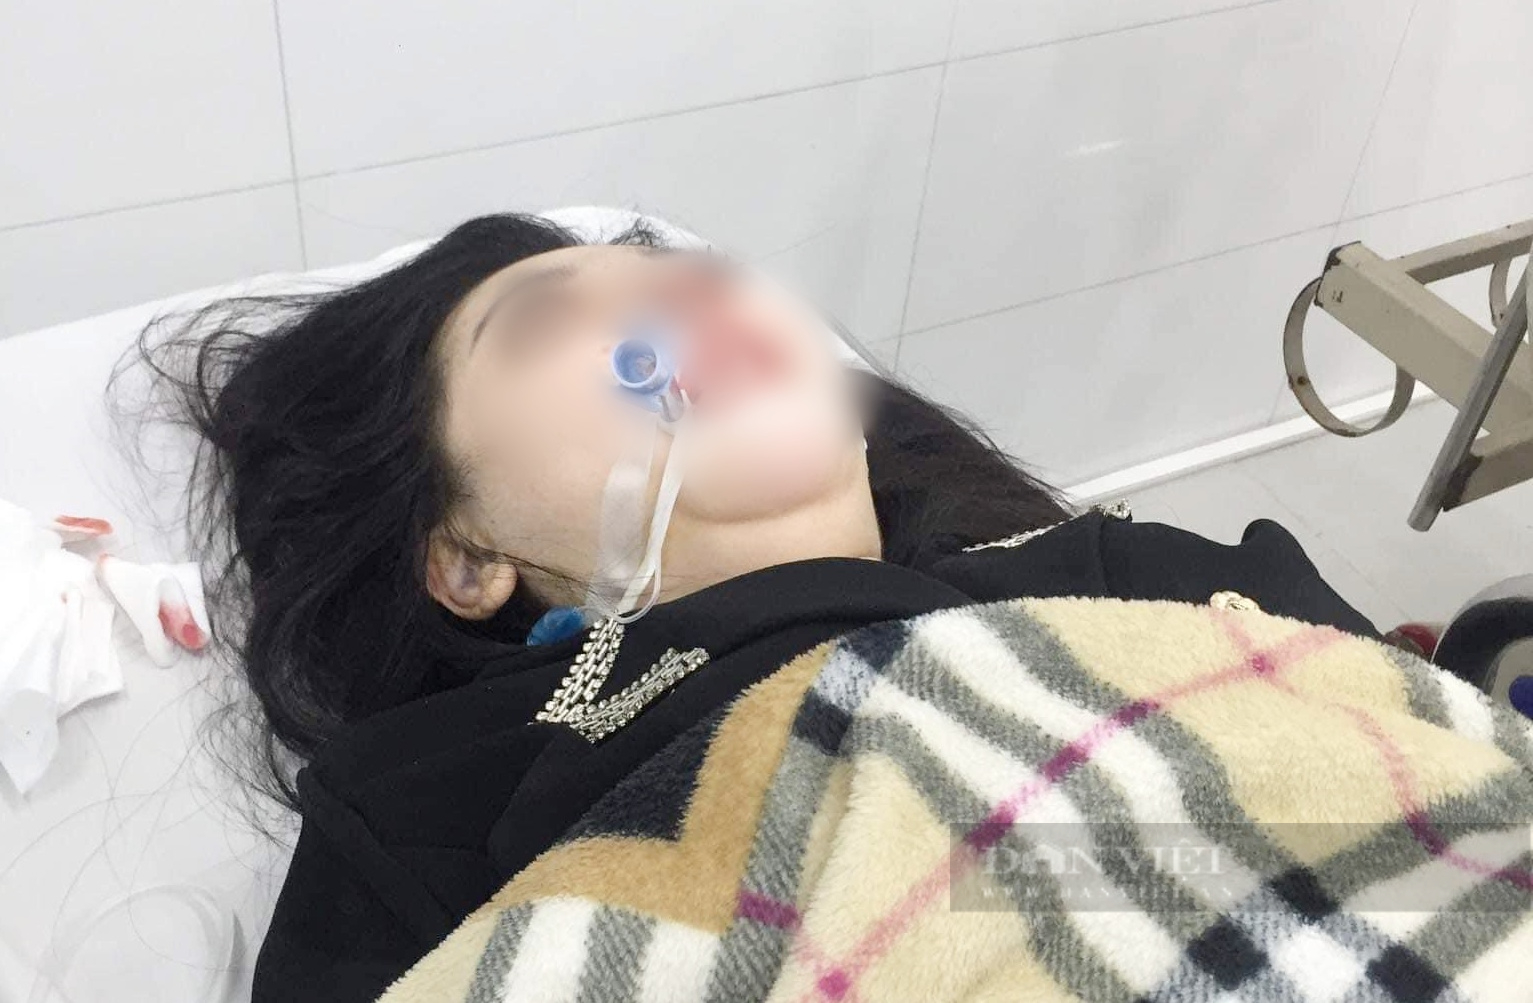 Phẫu thuật nâng mũi tại cơ sở thẩm mỹ, cô gái 22 tuổi hôn mê, nhập viện cấp cứu  - Ảnh 2.